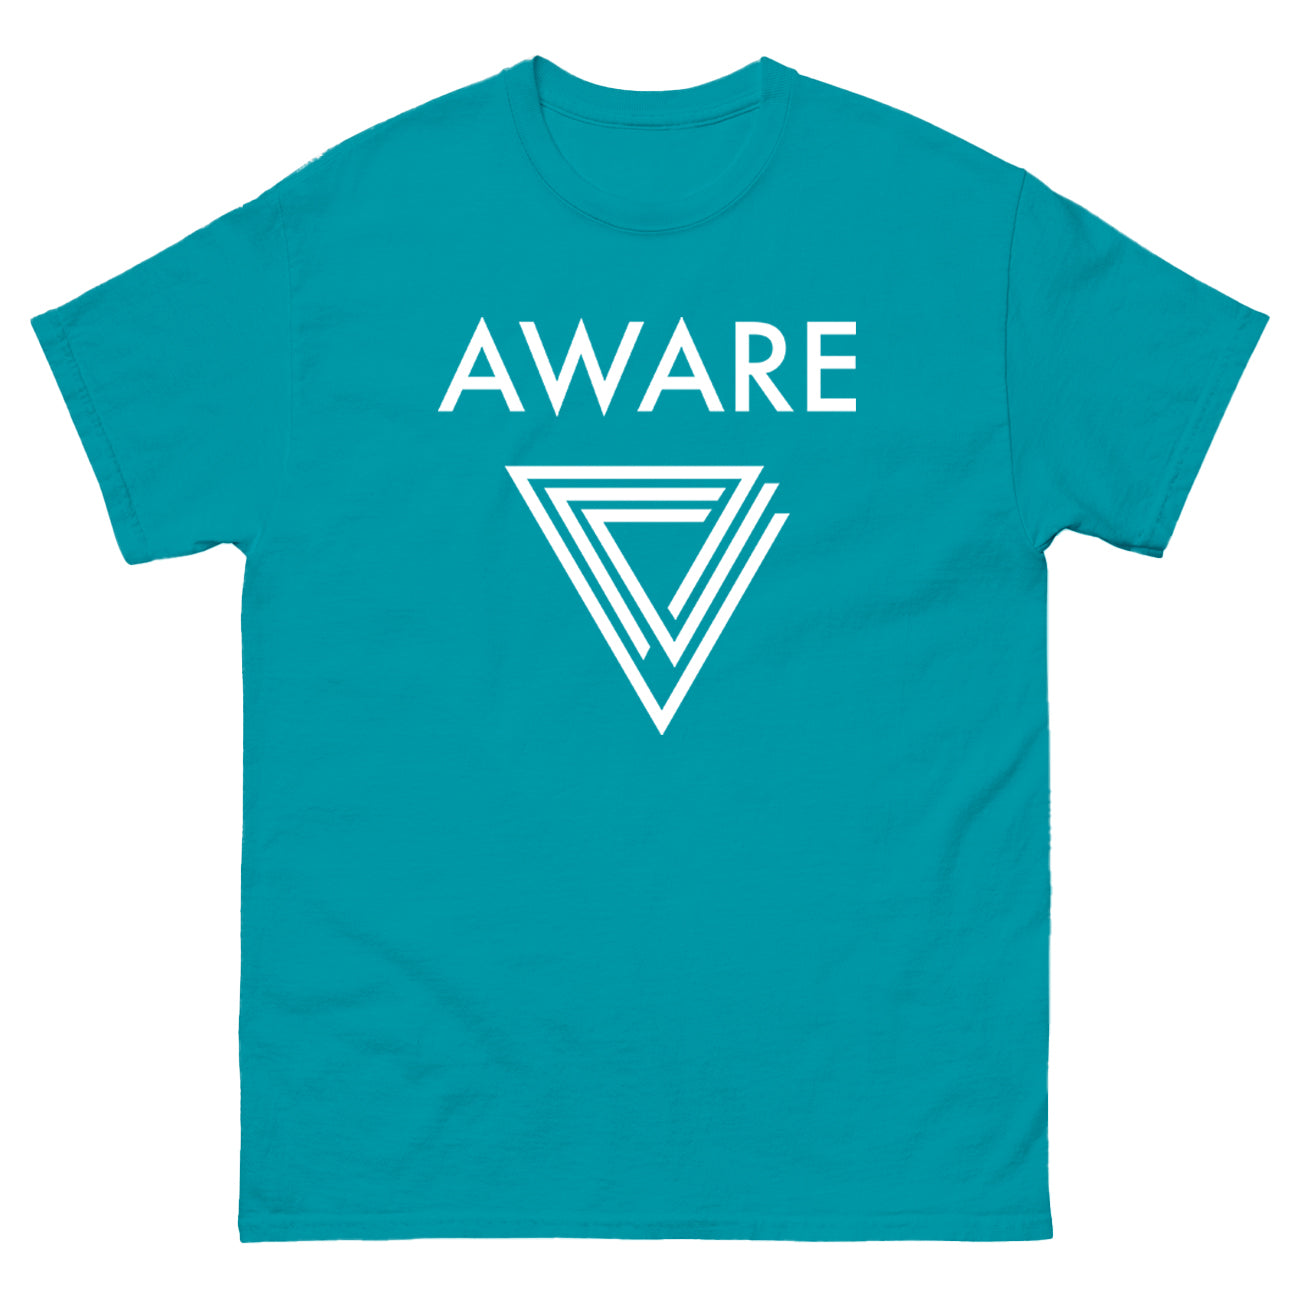 Teal AWARE Infinite Triangle T-Shirt